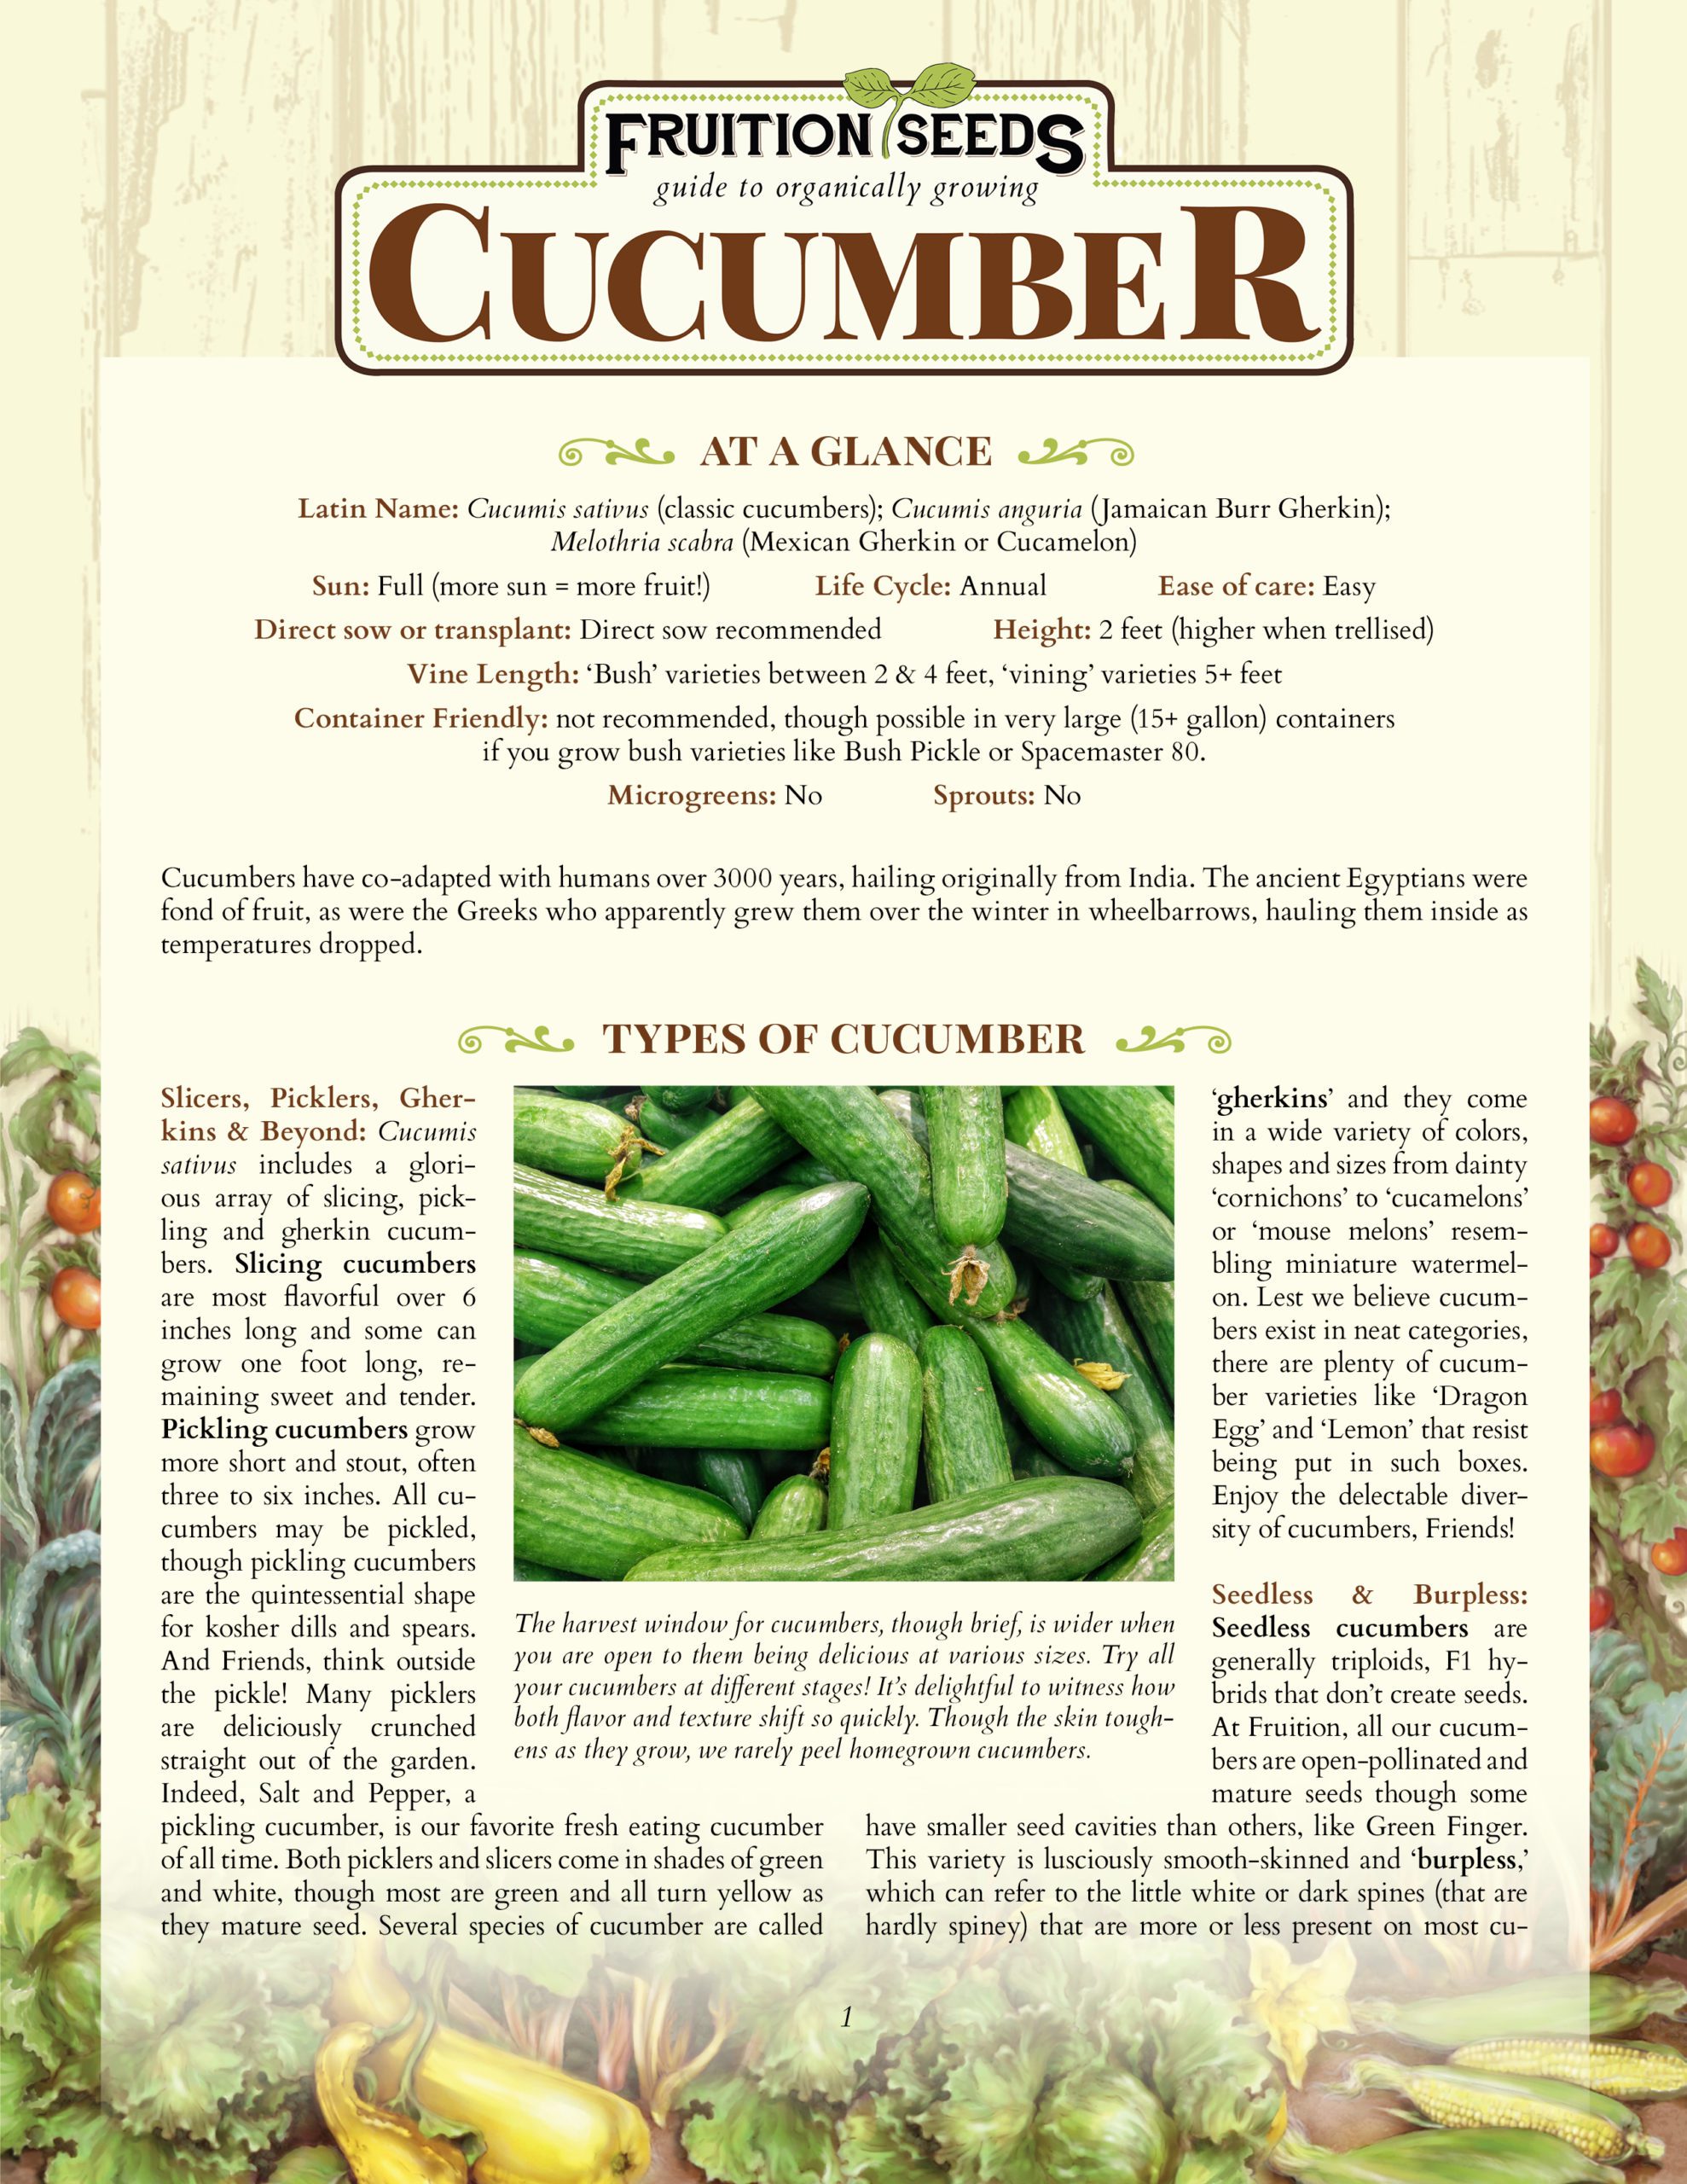 Fresh Garden Cucumbers - Order Online & Save